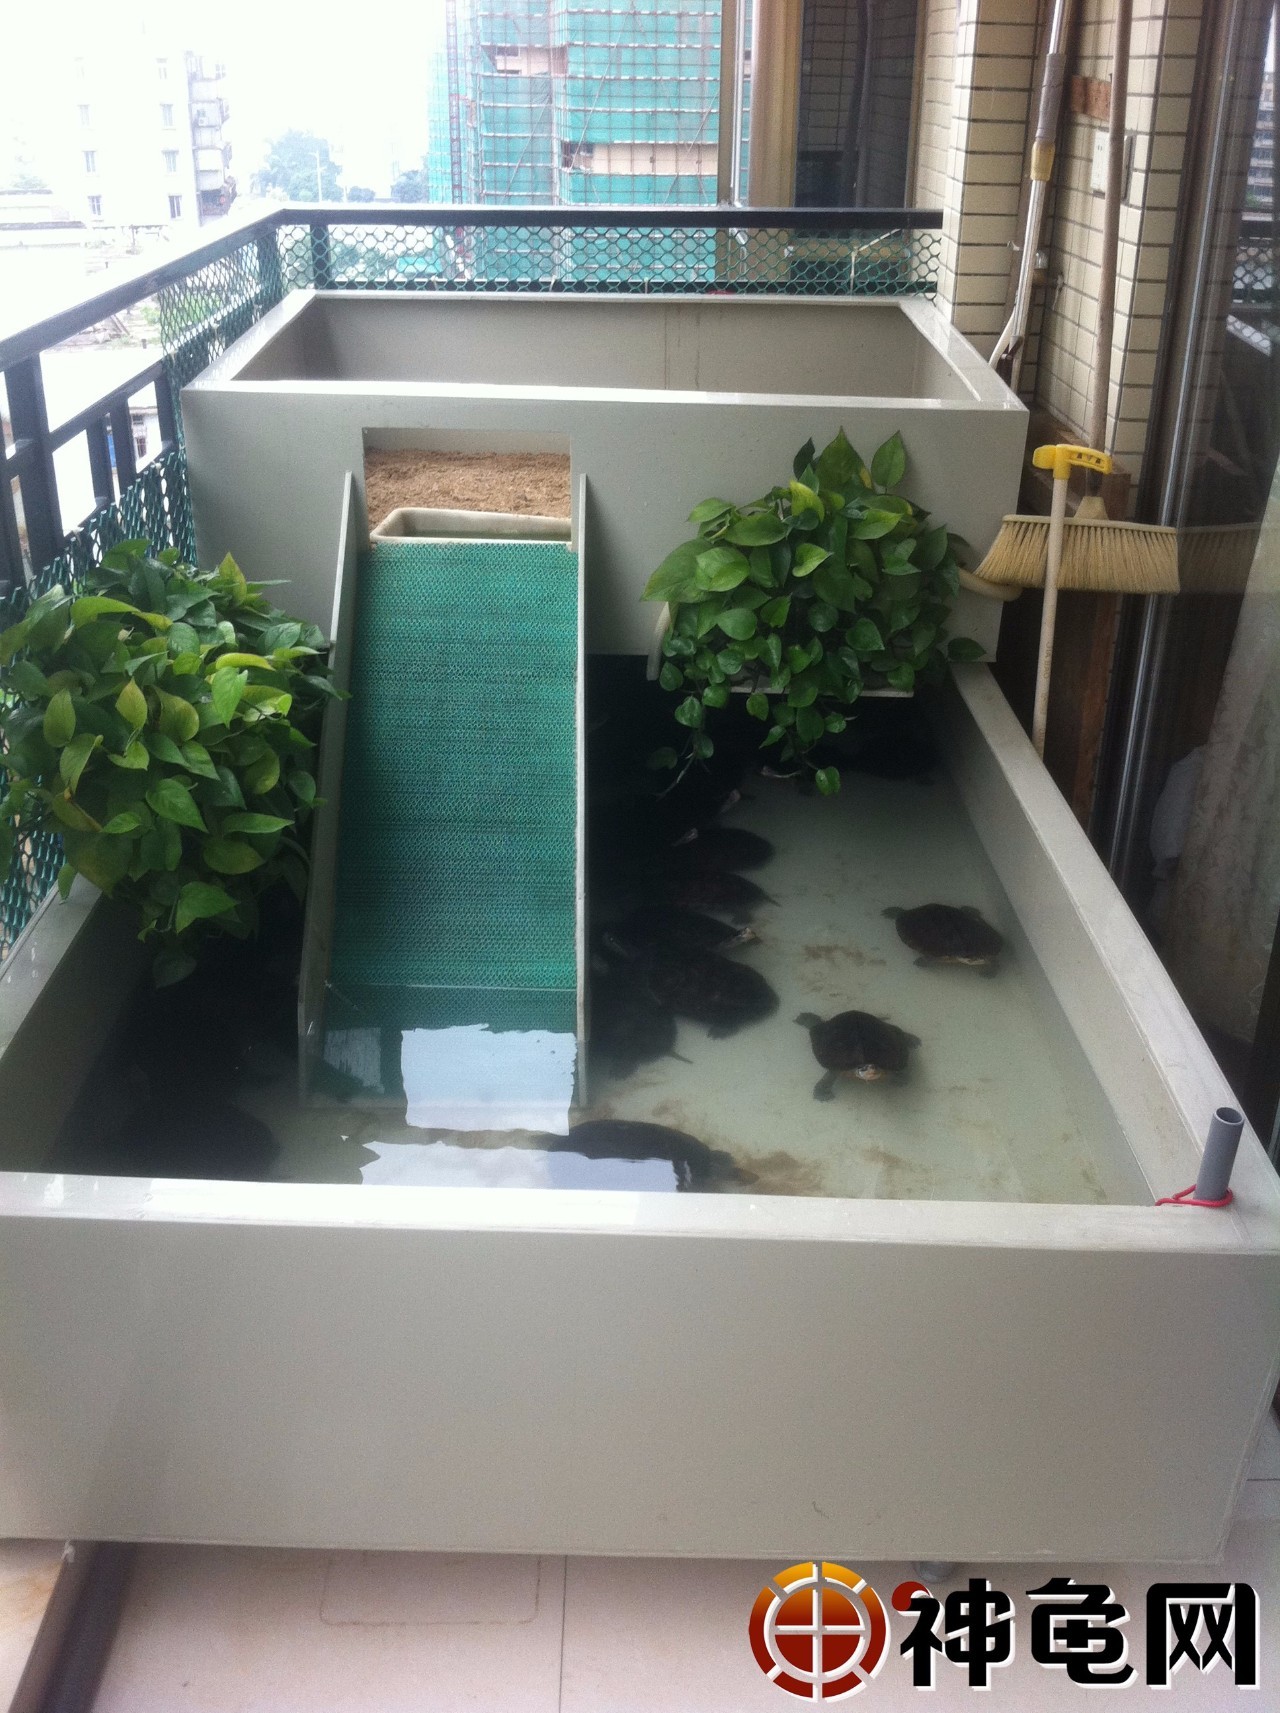 龟池建造术:家庭式小型阳台龟池建造详解